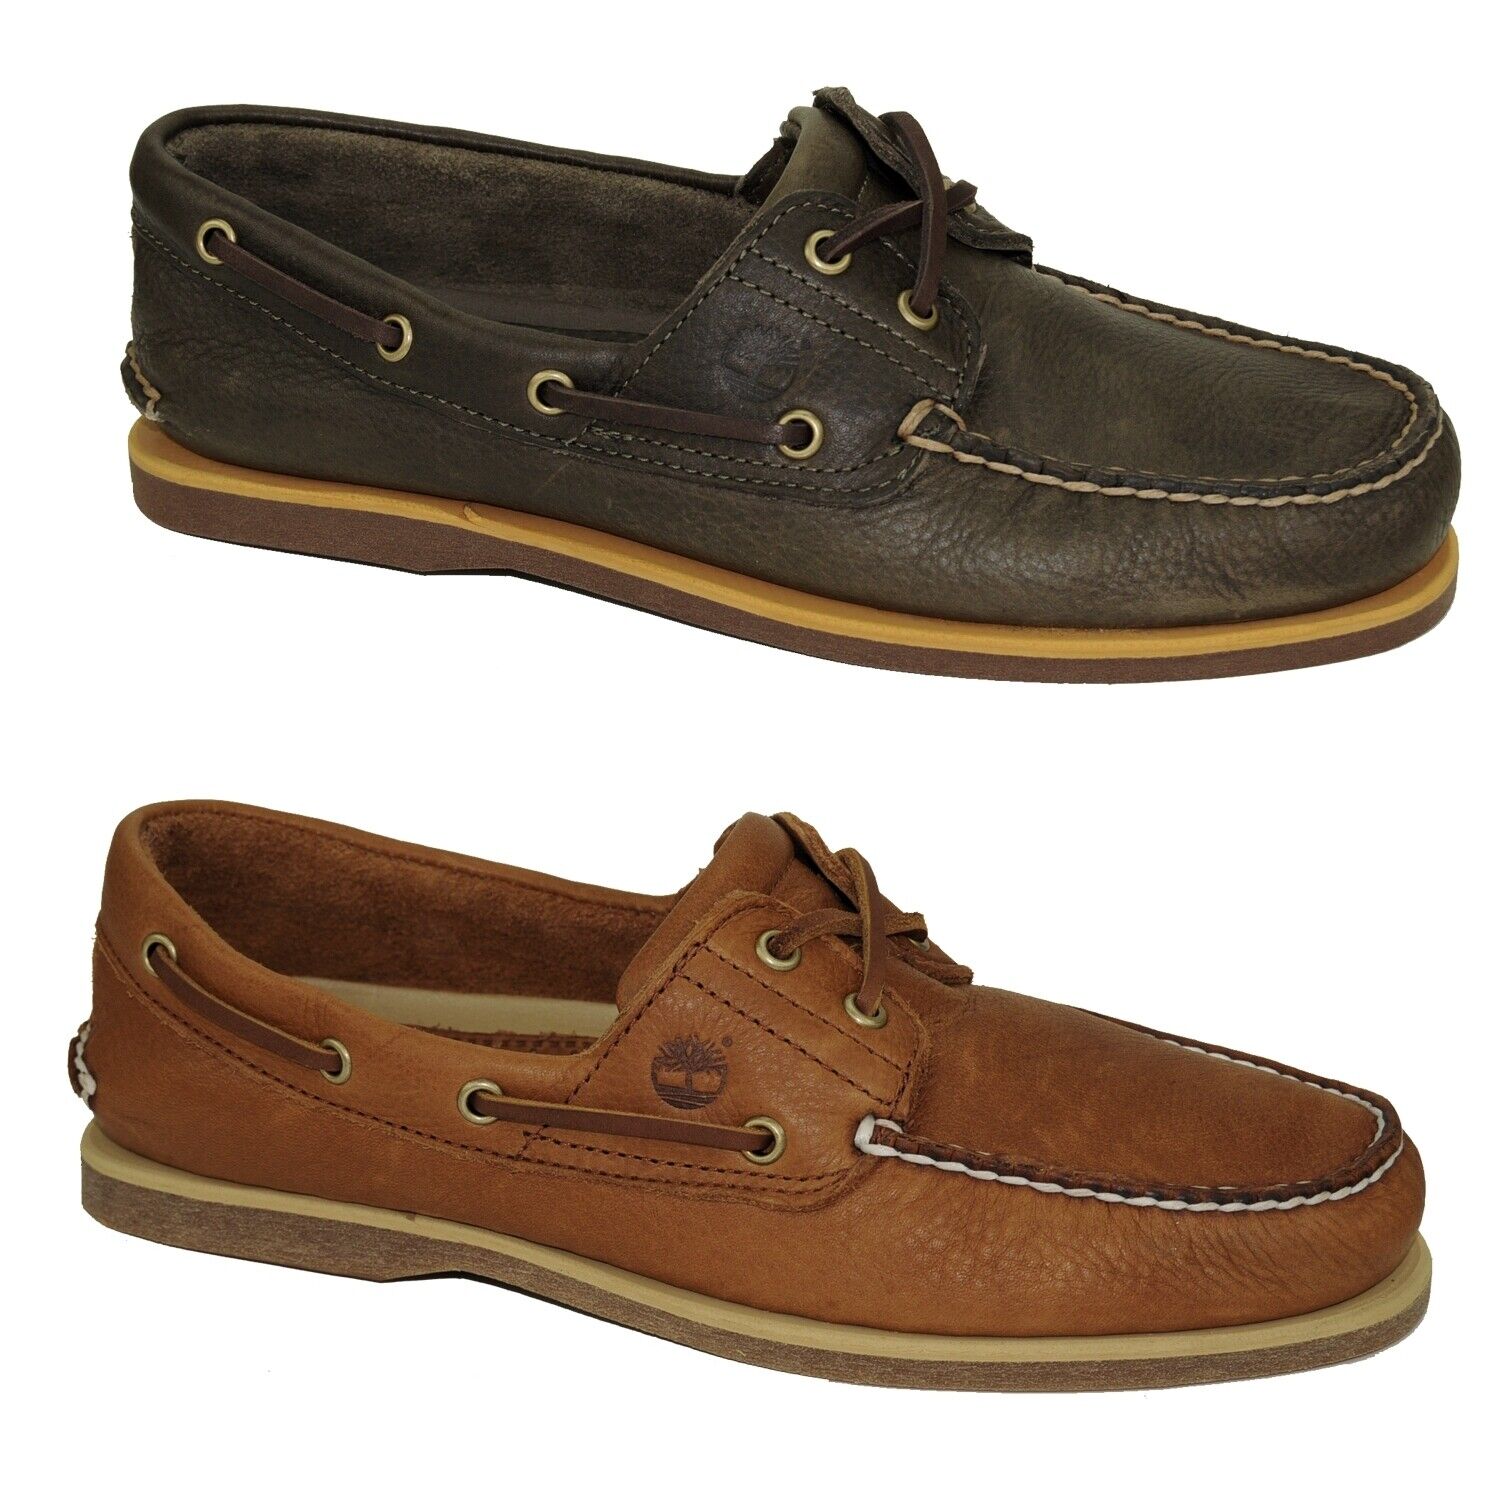 Timberland Classic Boat Shoes 2-Eye Deckschuhe Segelschuhe Herren Schuhe Modell- Farbe A2AFC - Olive Schuhgröße EUR 41,5 US 8